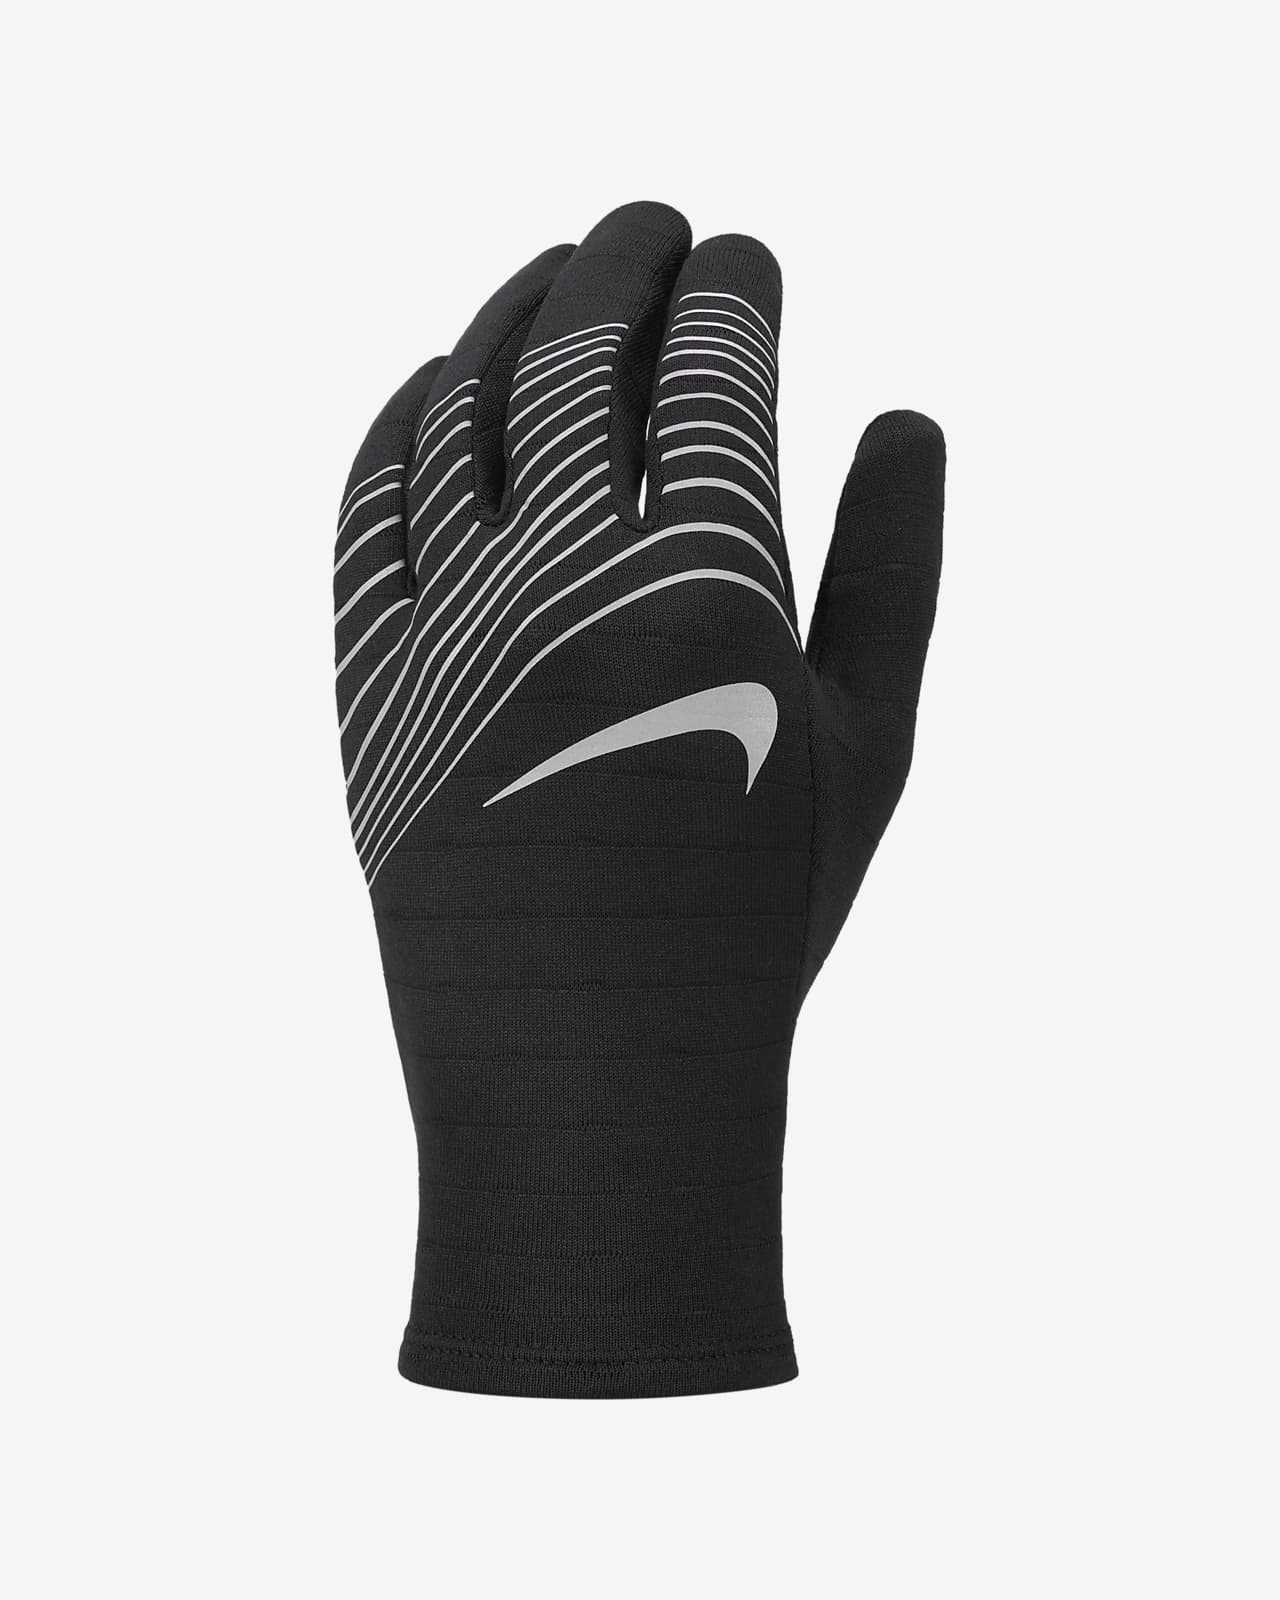 Nike Sphere 360 Running Gloves.